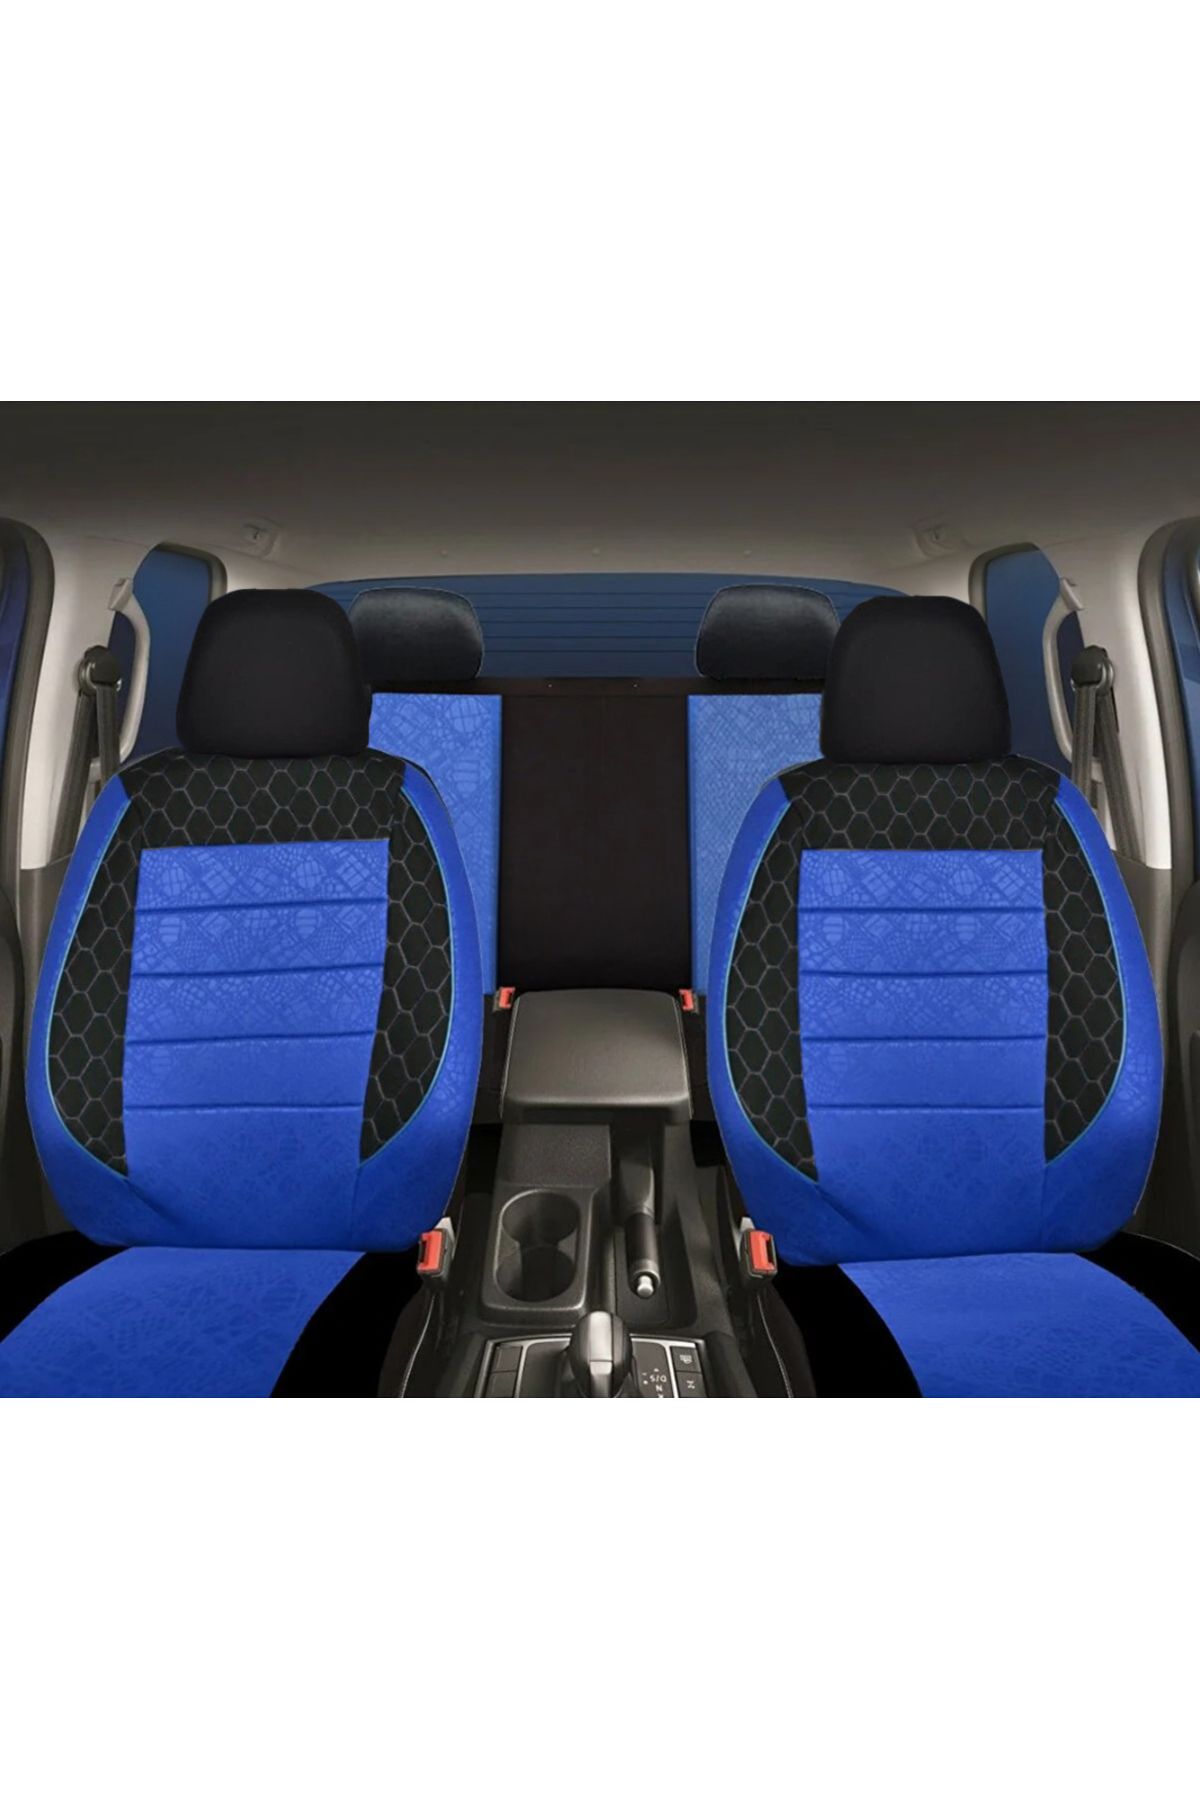 BTİC Fiat Penny Uyumlu mavi Oto Koltuk Kılıfı (Tam Takım Ön Arka Araç Koltuk Kılıfı)